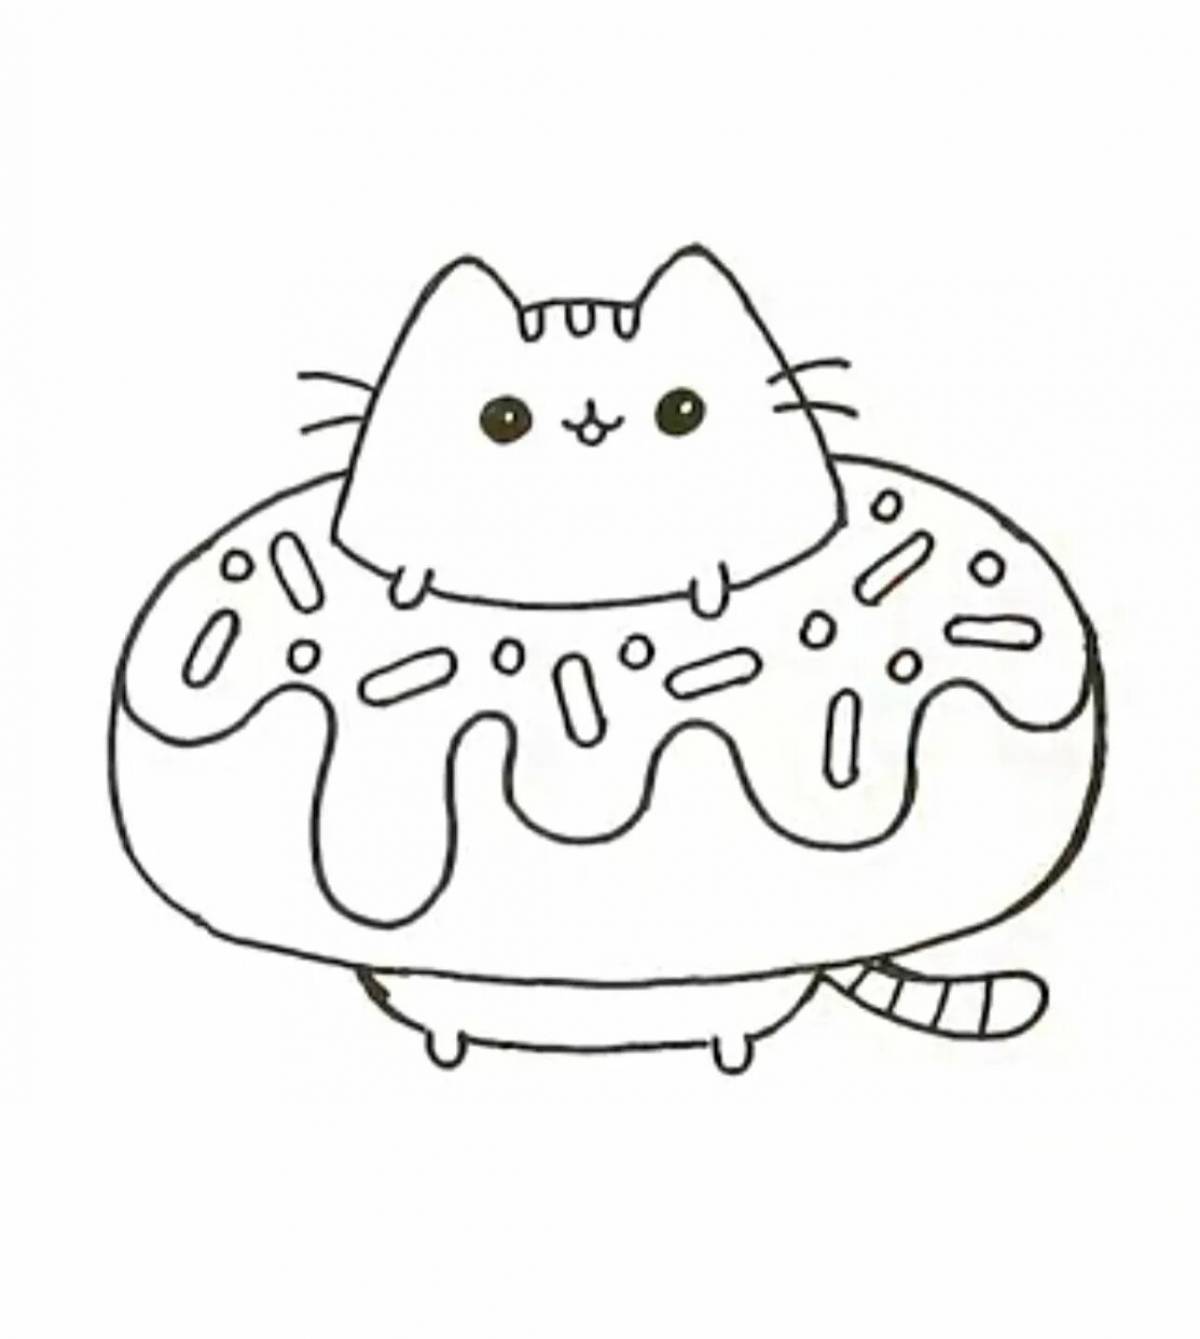 Food cat #11